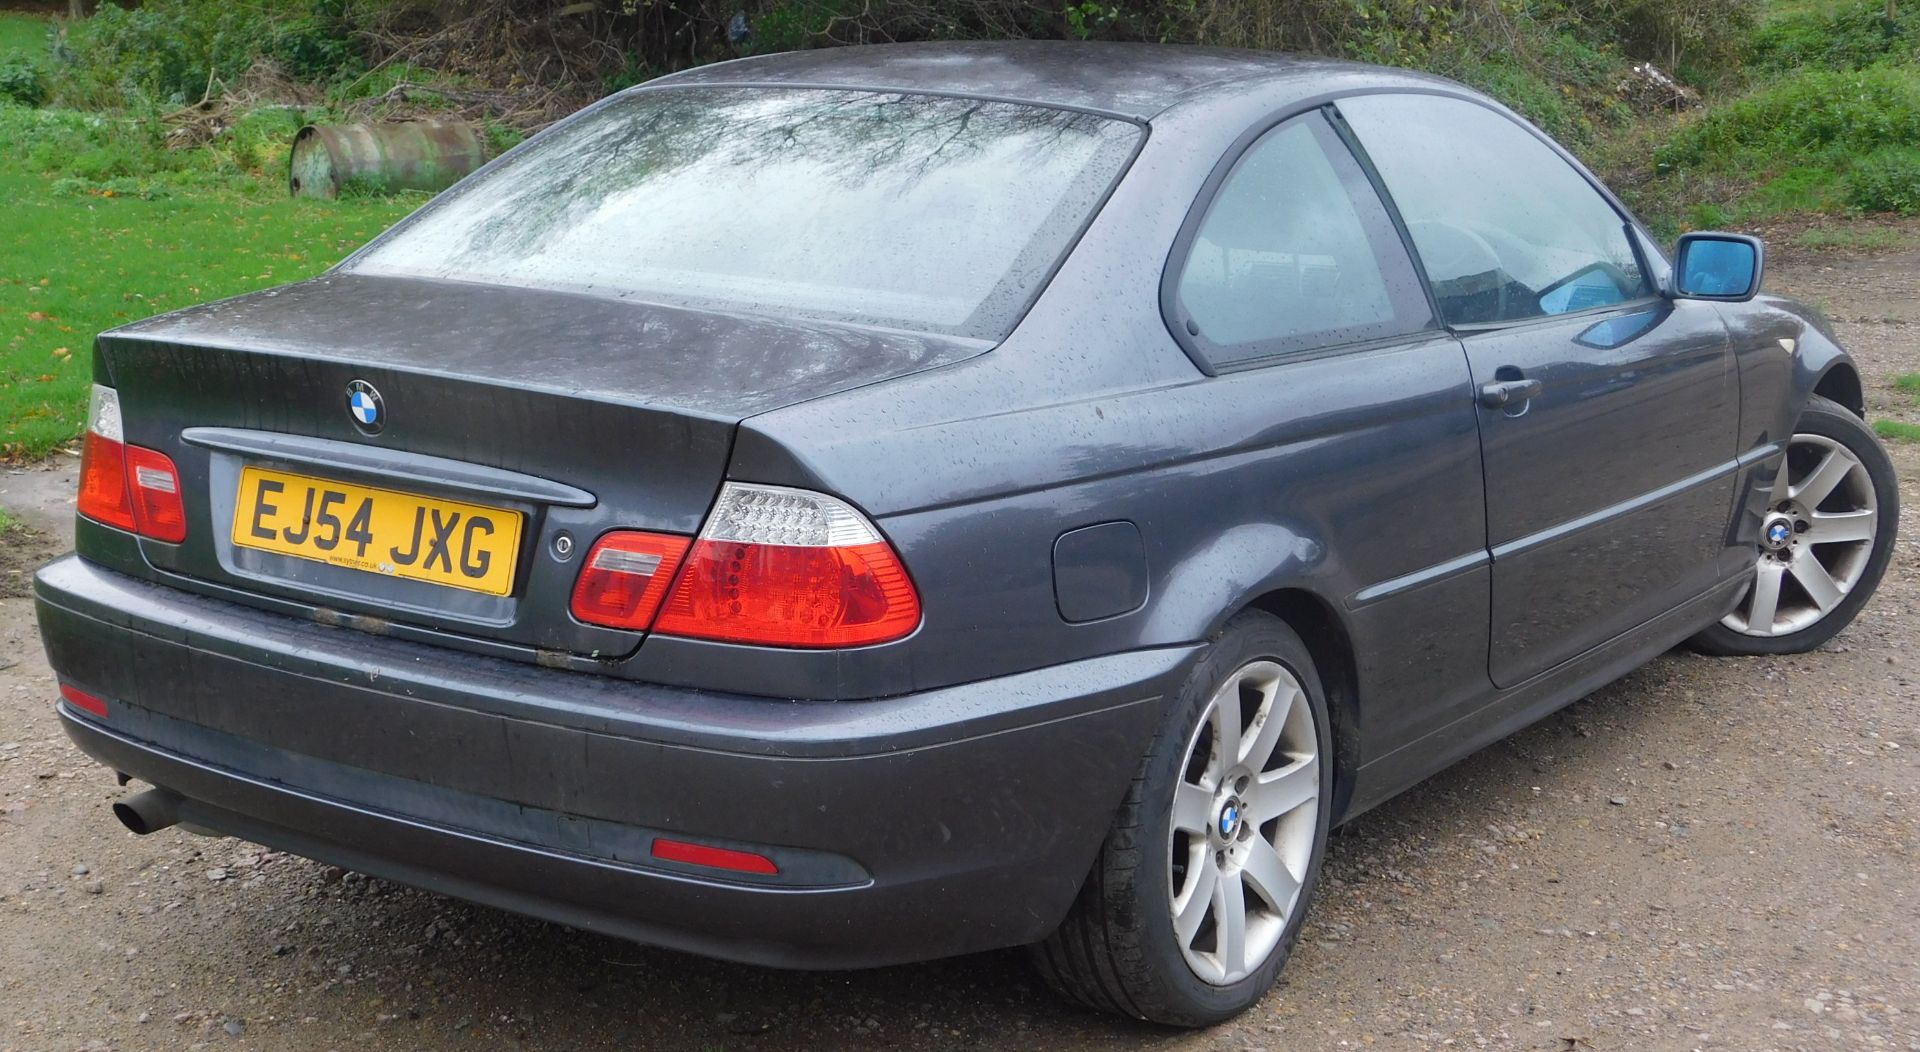 BMW 3 Series Coupe 318 Ci ES 2dr, Registration Number EJ54 JXG, First Registered 17th November 2004, - Image 4 of 21